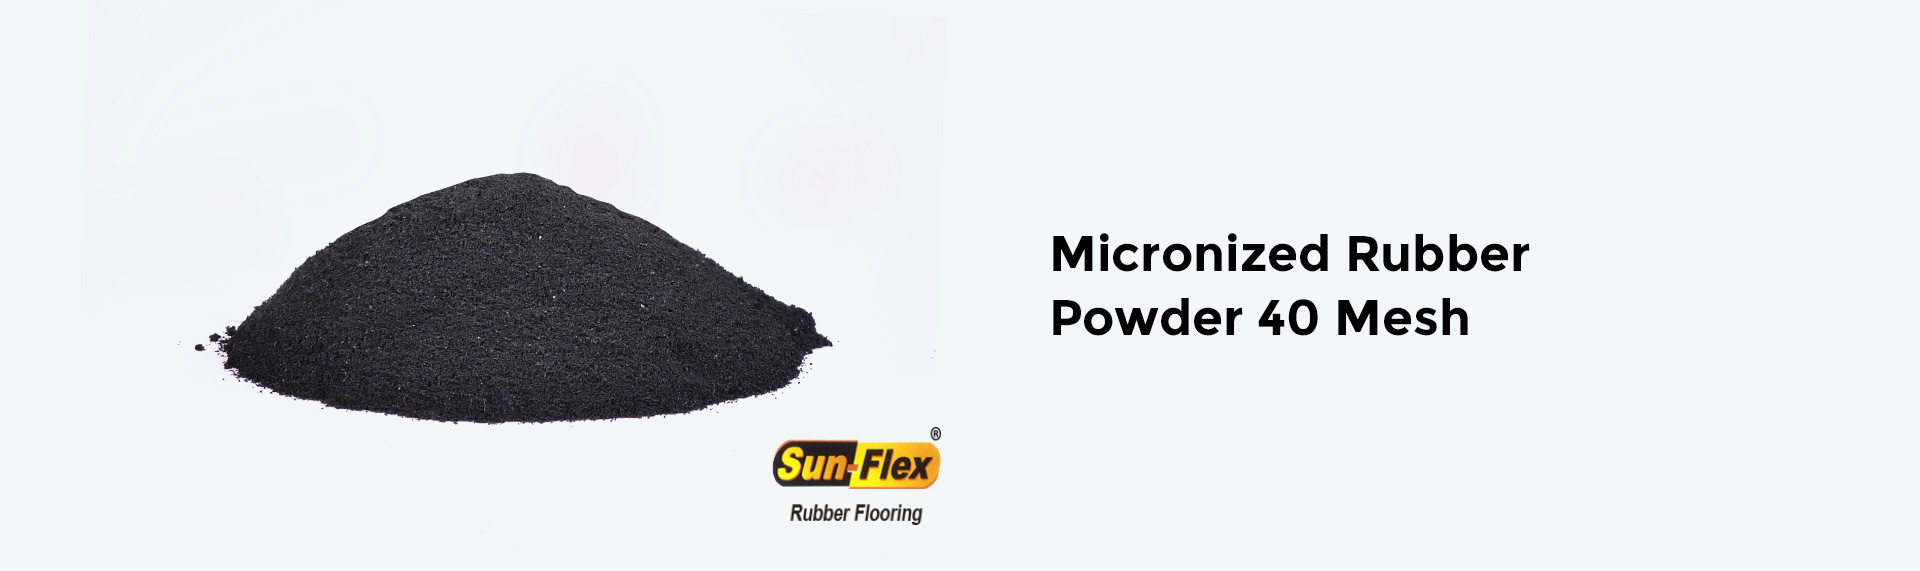 Micronized-Rubber-Powder-40-Mesh